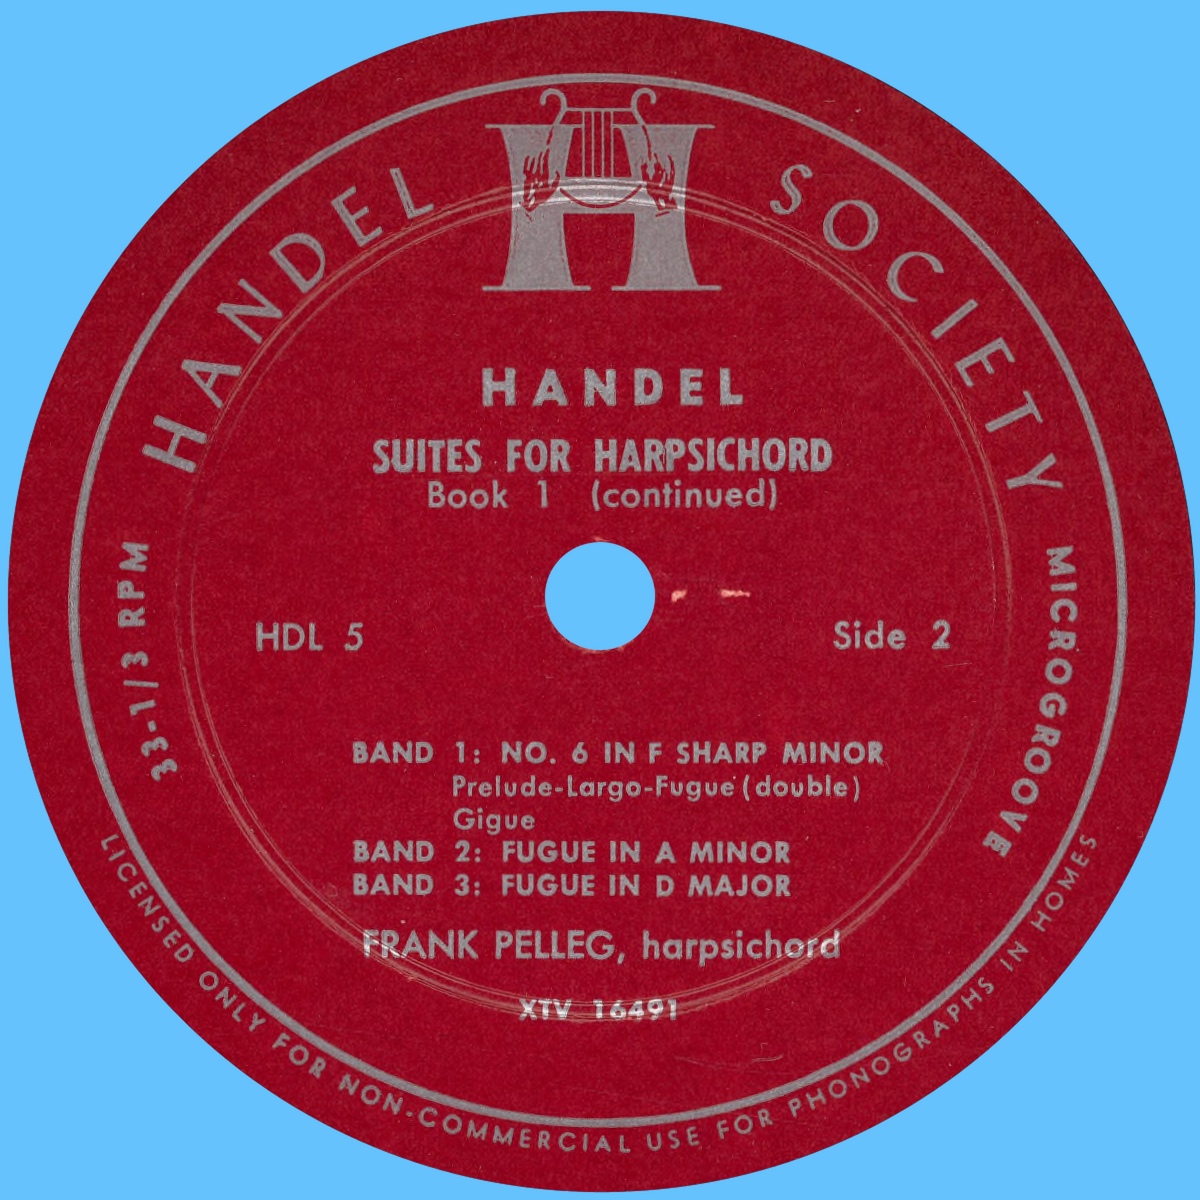 Étiquette verso du disque Handel Society HDL 5